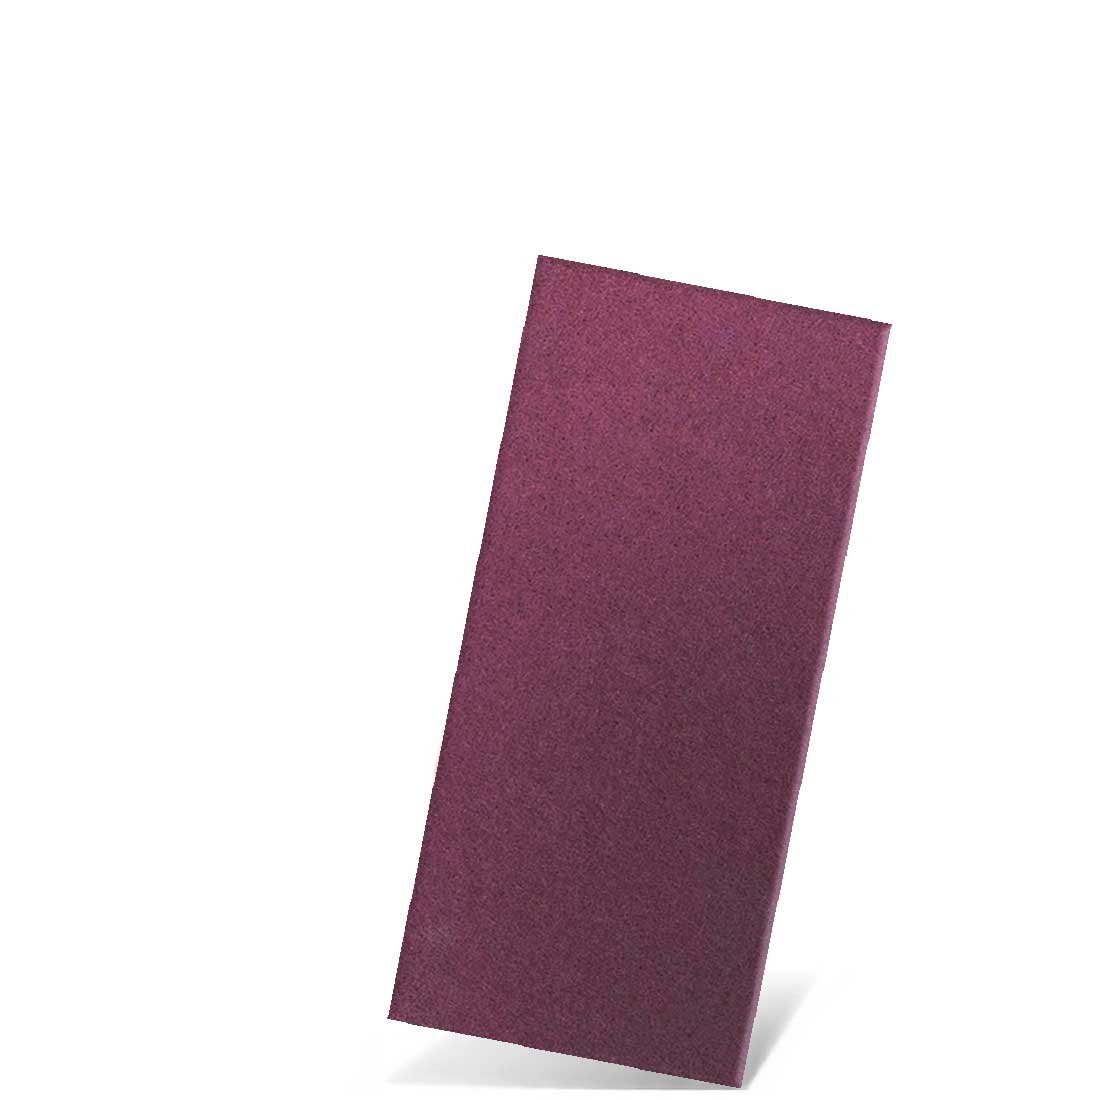 MENZER Schleifpapier 250 x 115 mm Handschleifvliese für Handschleifer, Faservlies, 10 Stk., violett